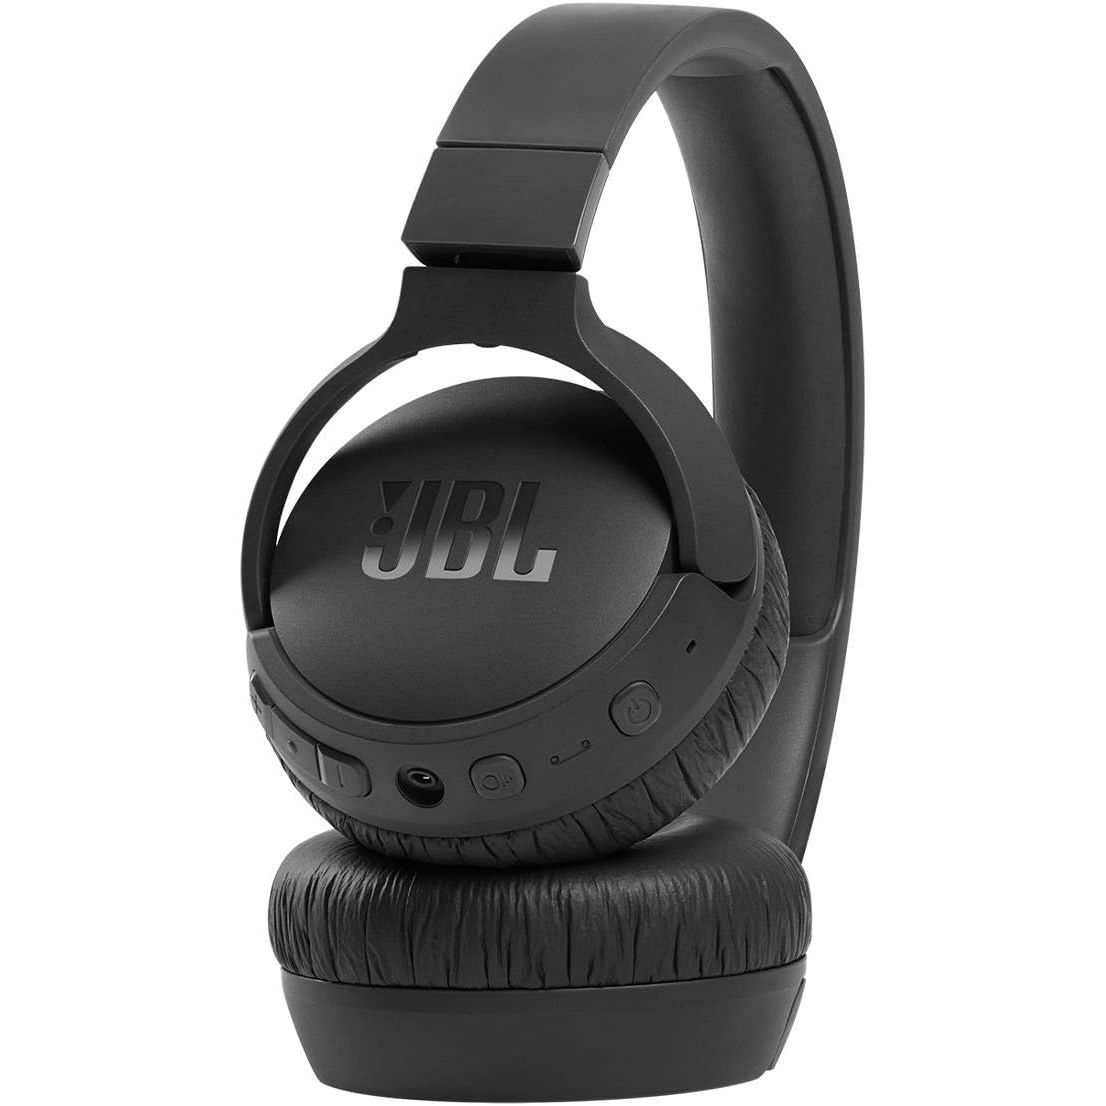 Render of the JBL Tune 660NC headphones